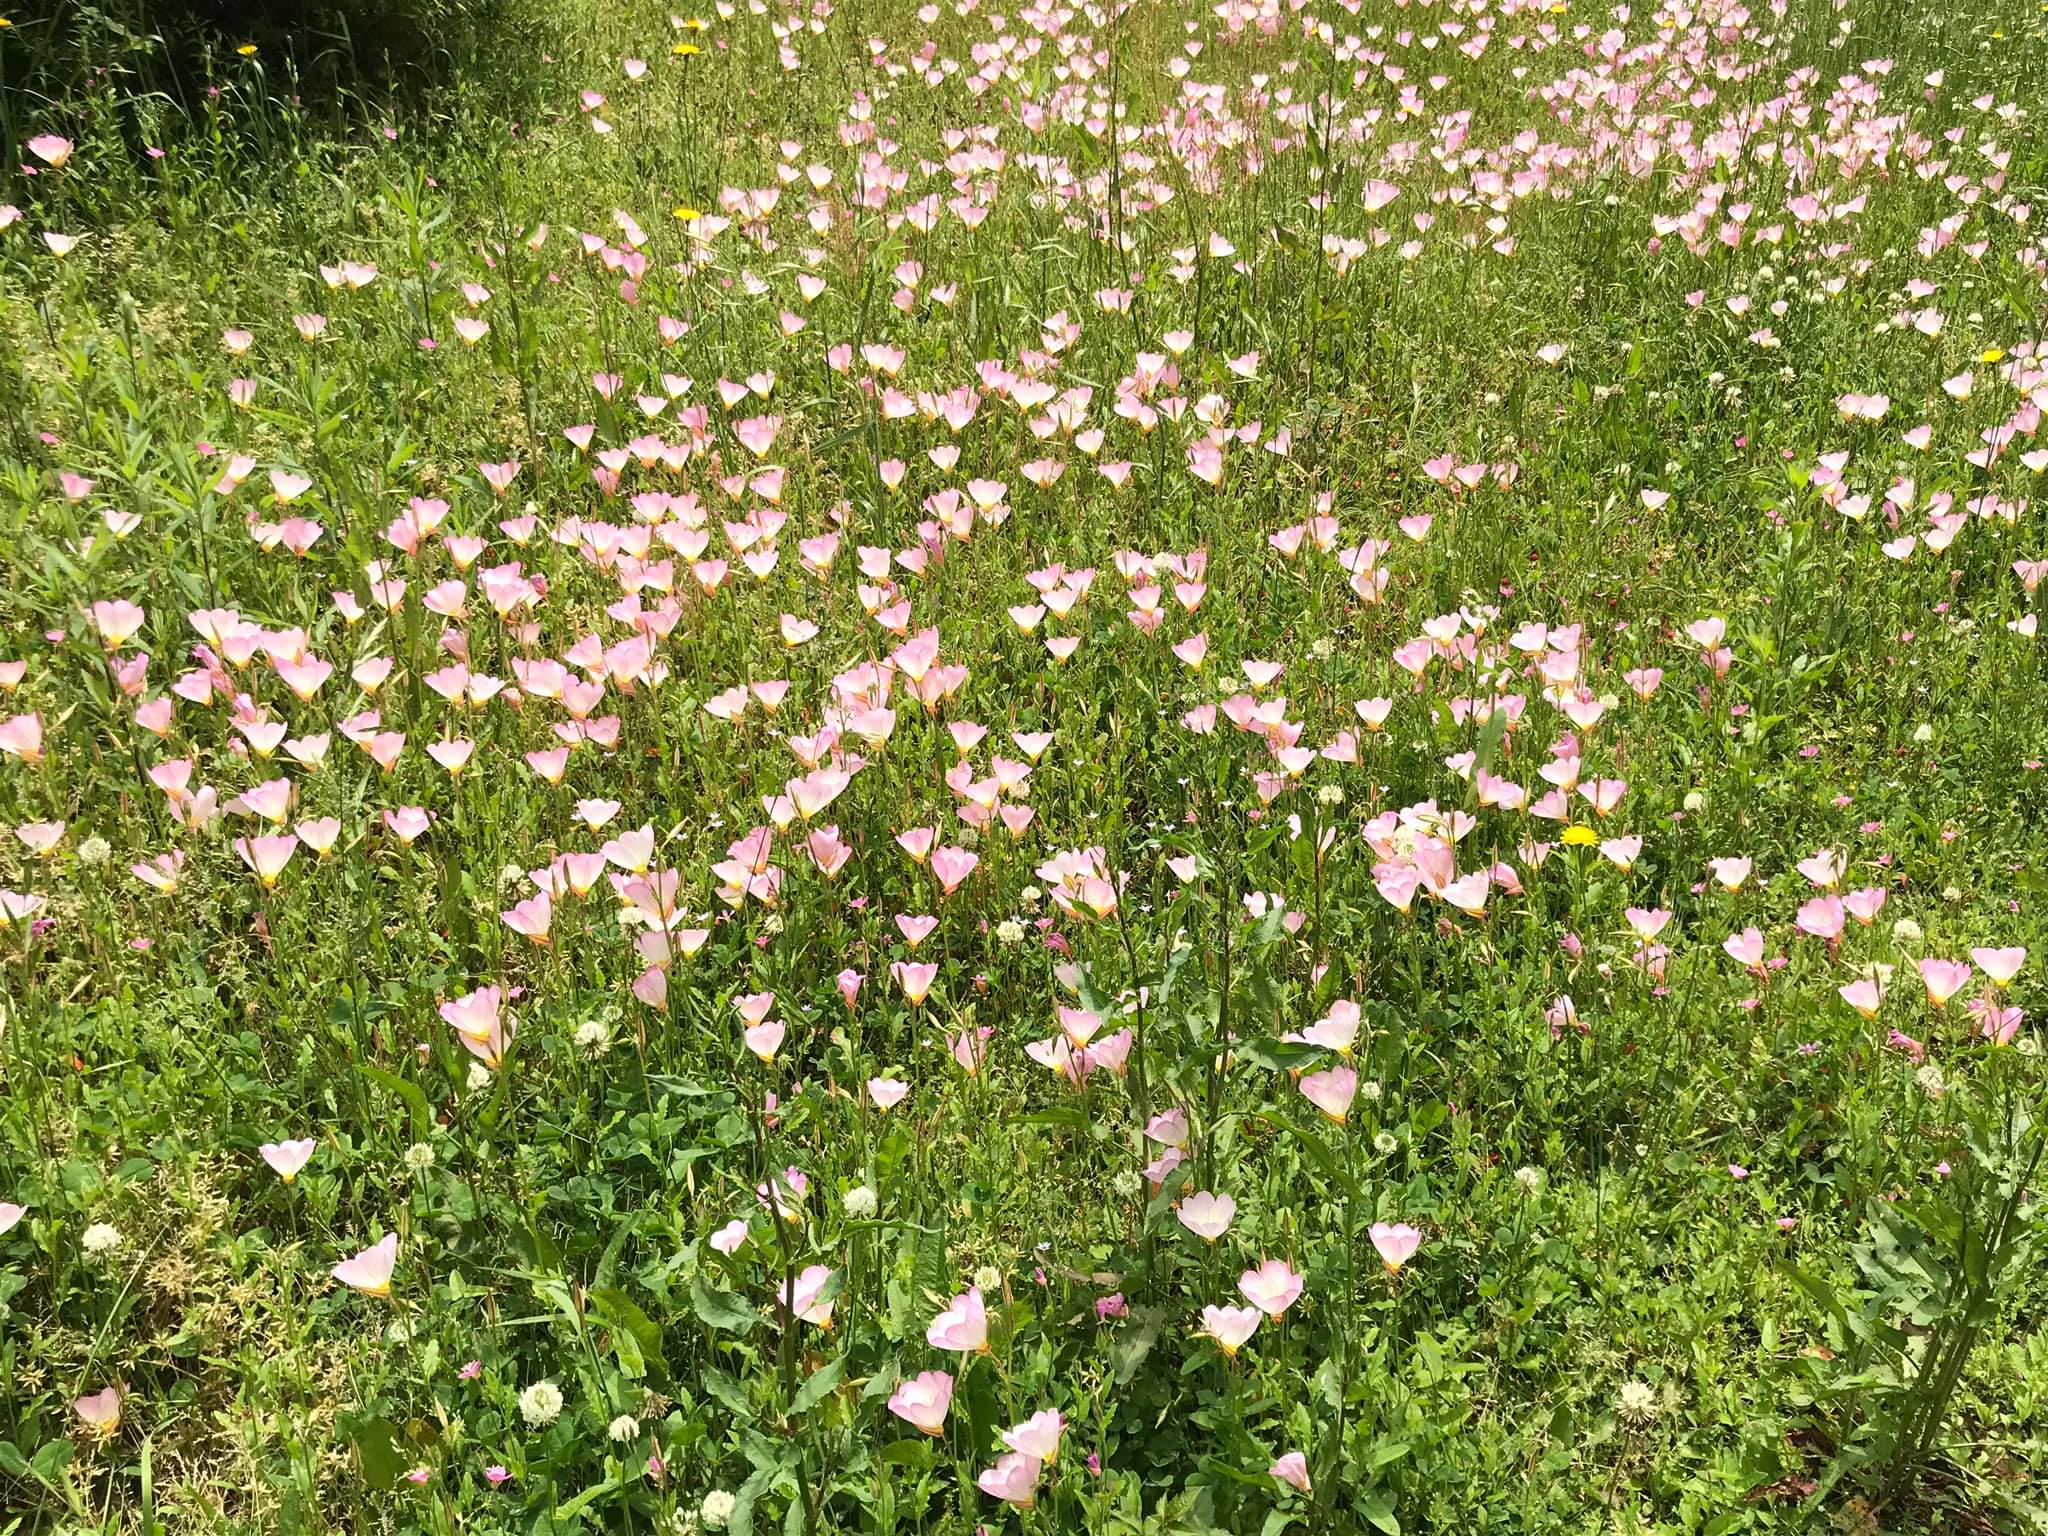 近所に咲いていたピンク色のきれいな草花